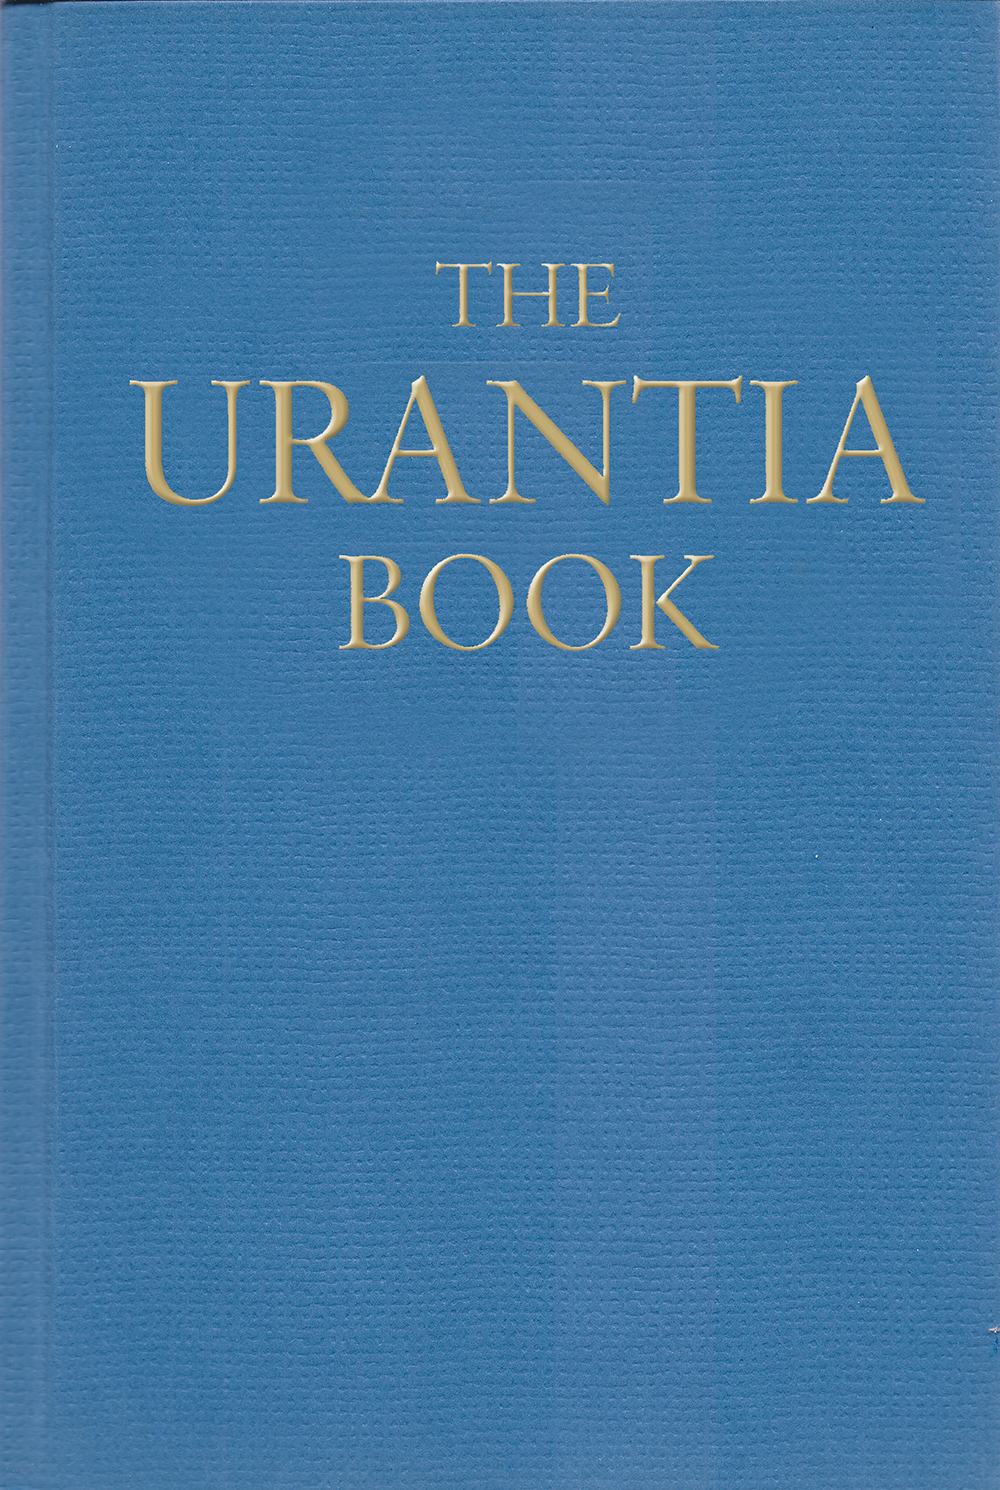 2013 The Urantia Book - Big Blue without jacket | Urantia Book ...